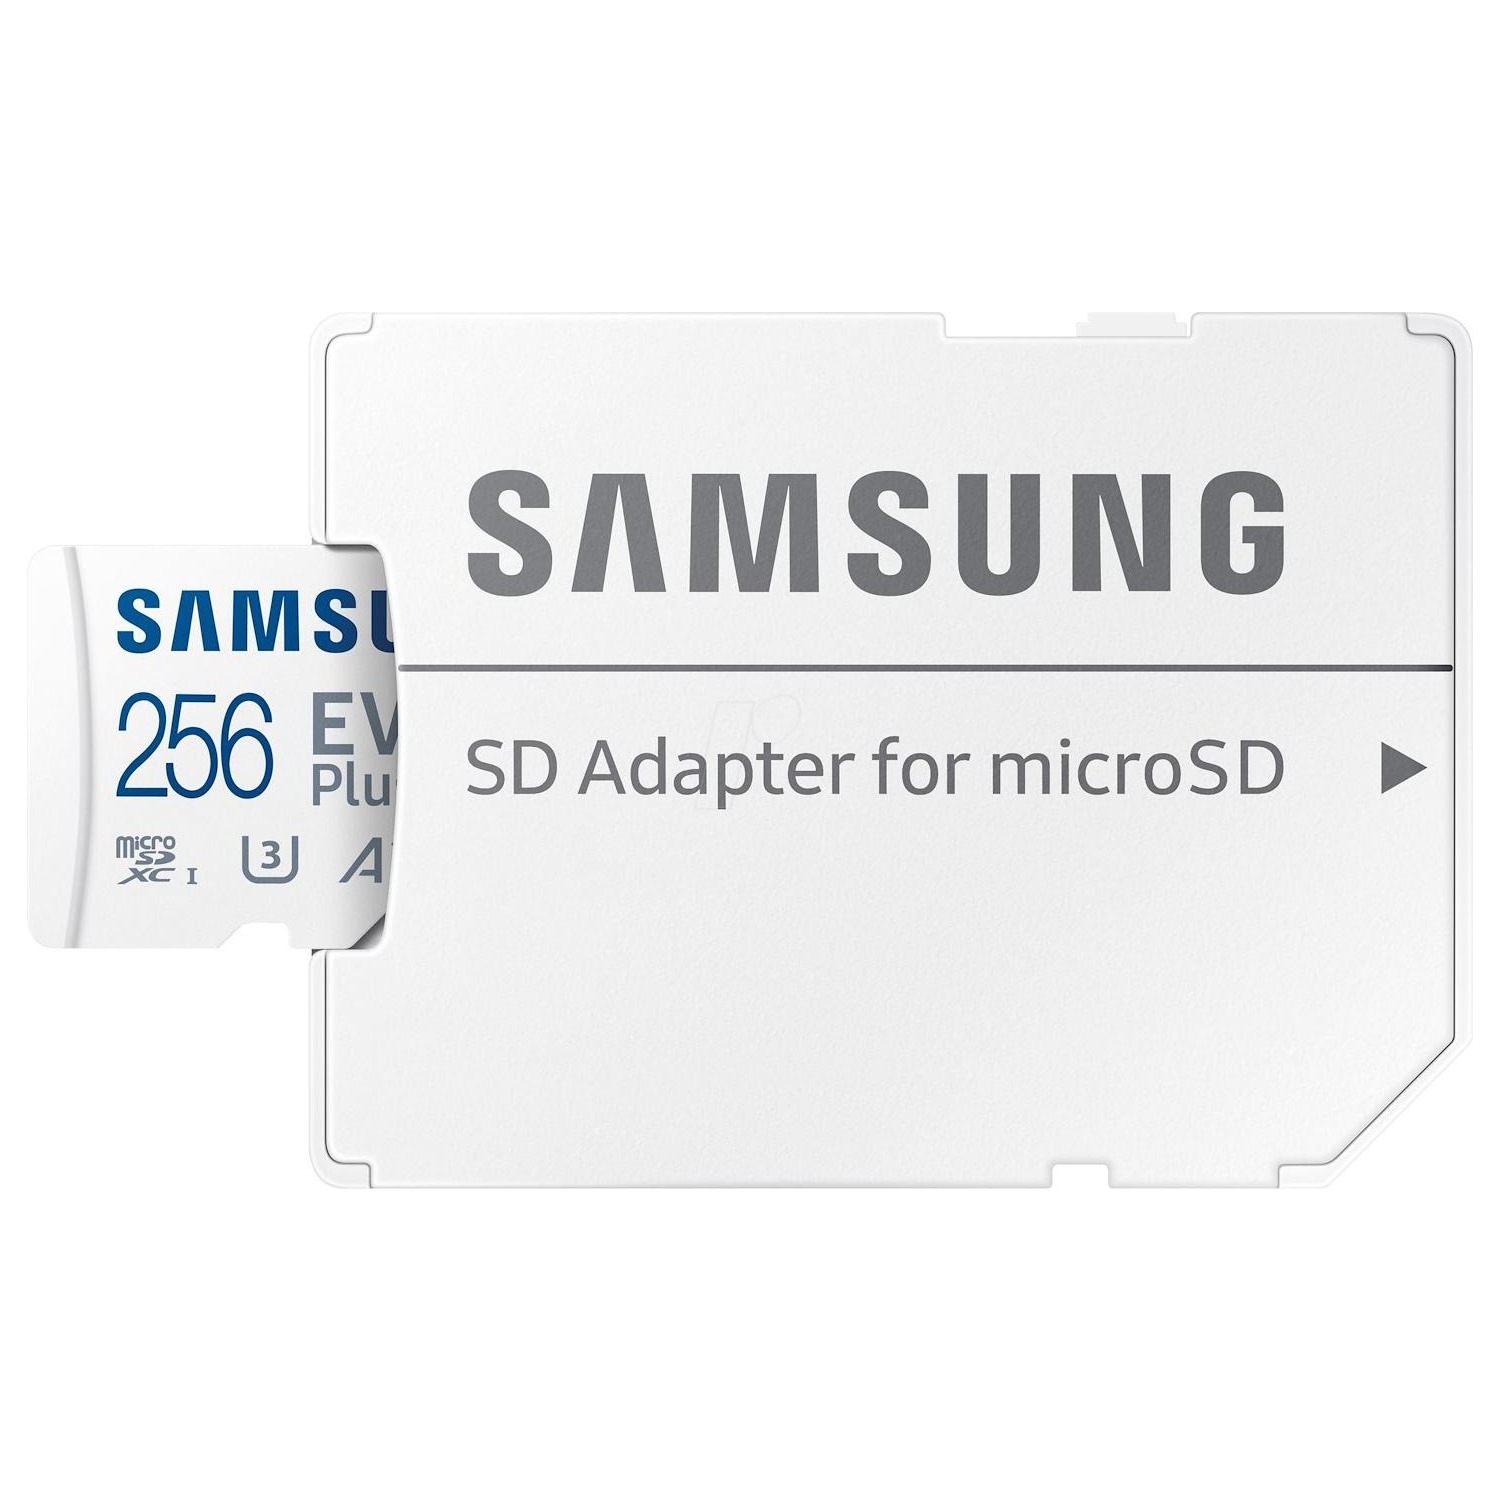 Immagine per MicroSD Samsung MC256GA/EU 256 GB                 con adattatore da DIMOStore